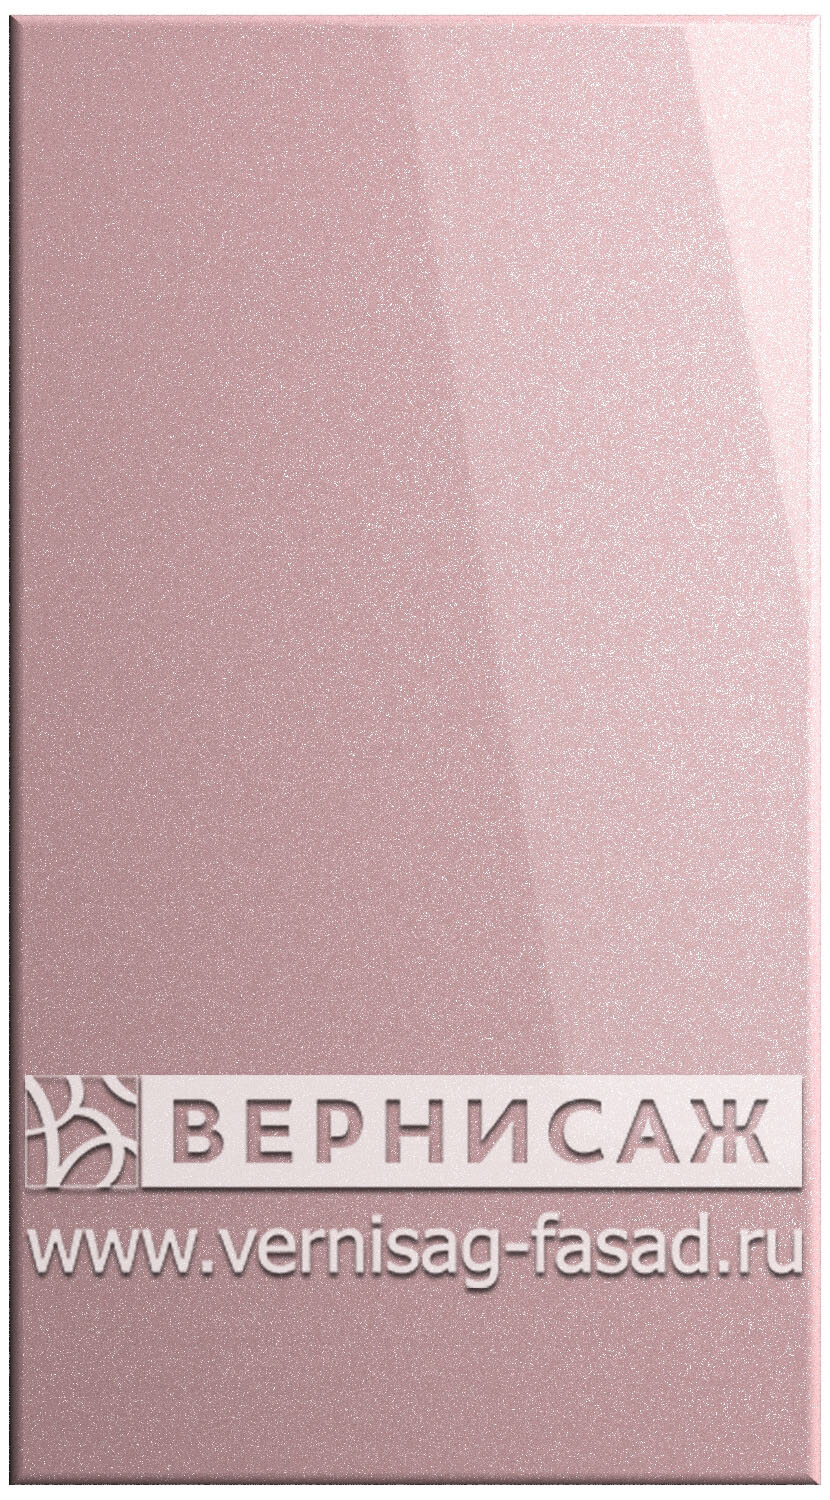 Фасады в пленке ПВХ, Фрезеровка № 15, цвет Розовый металлик